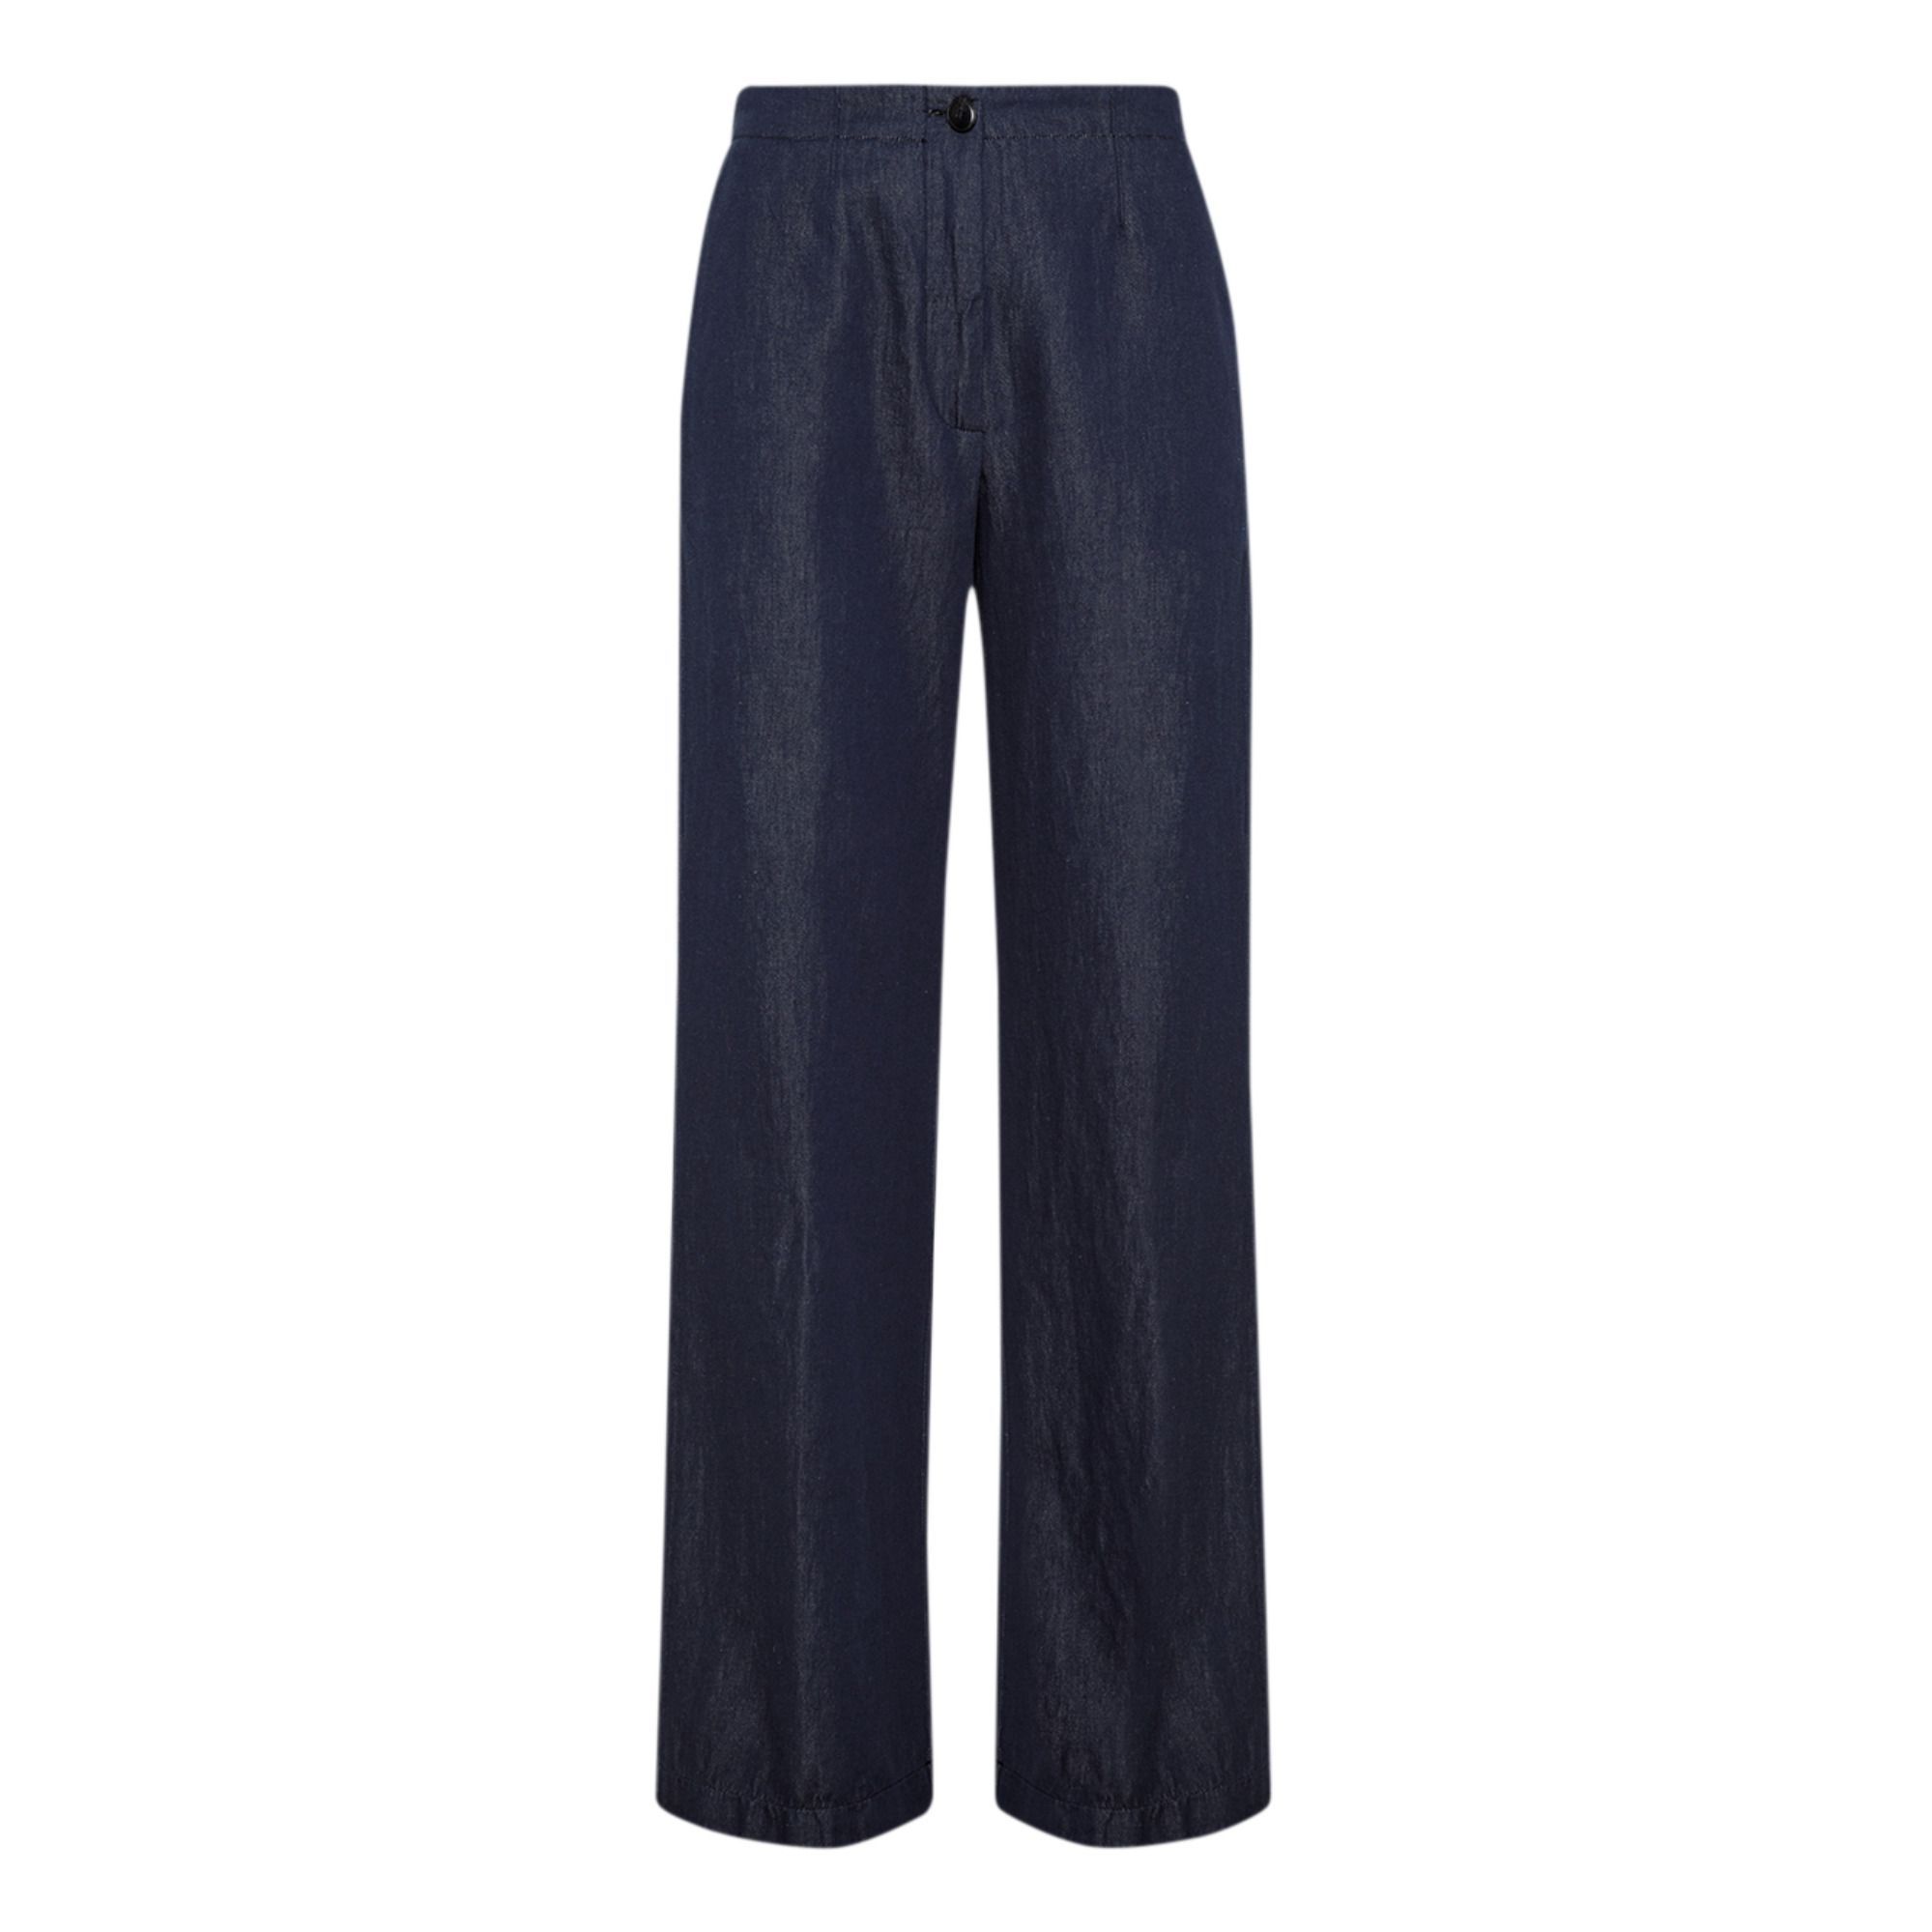 Pomandère - Pantalon Droit Lin et Coton - Femme - Bleu indigo